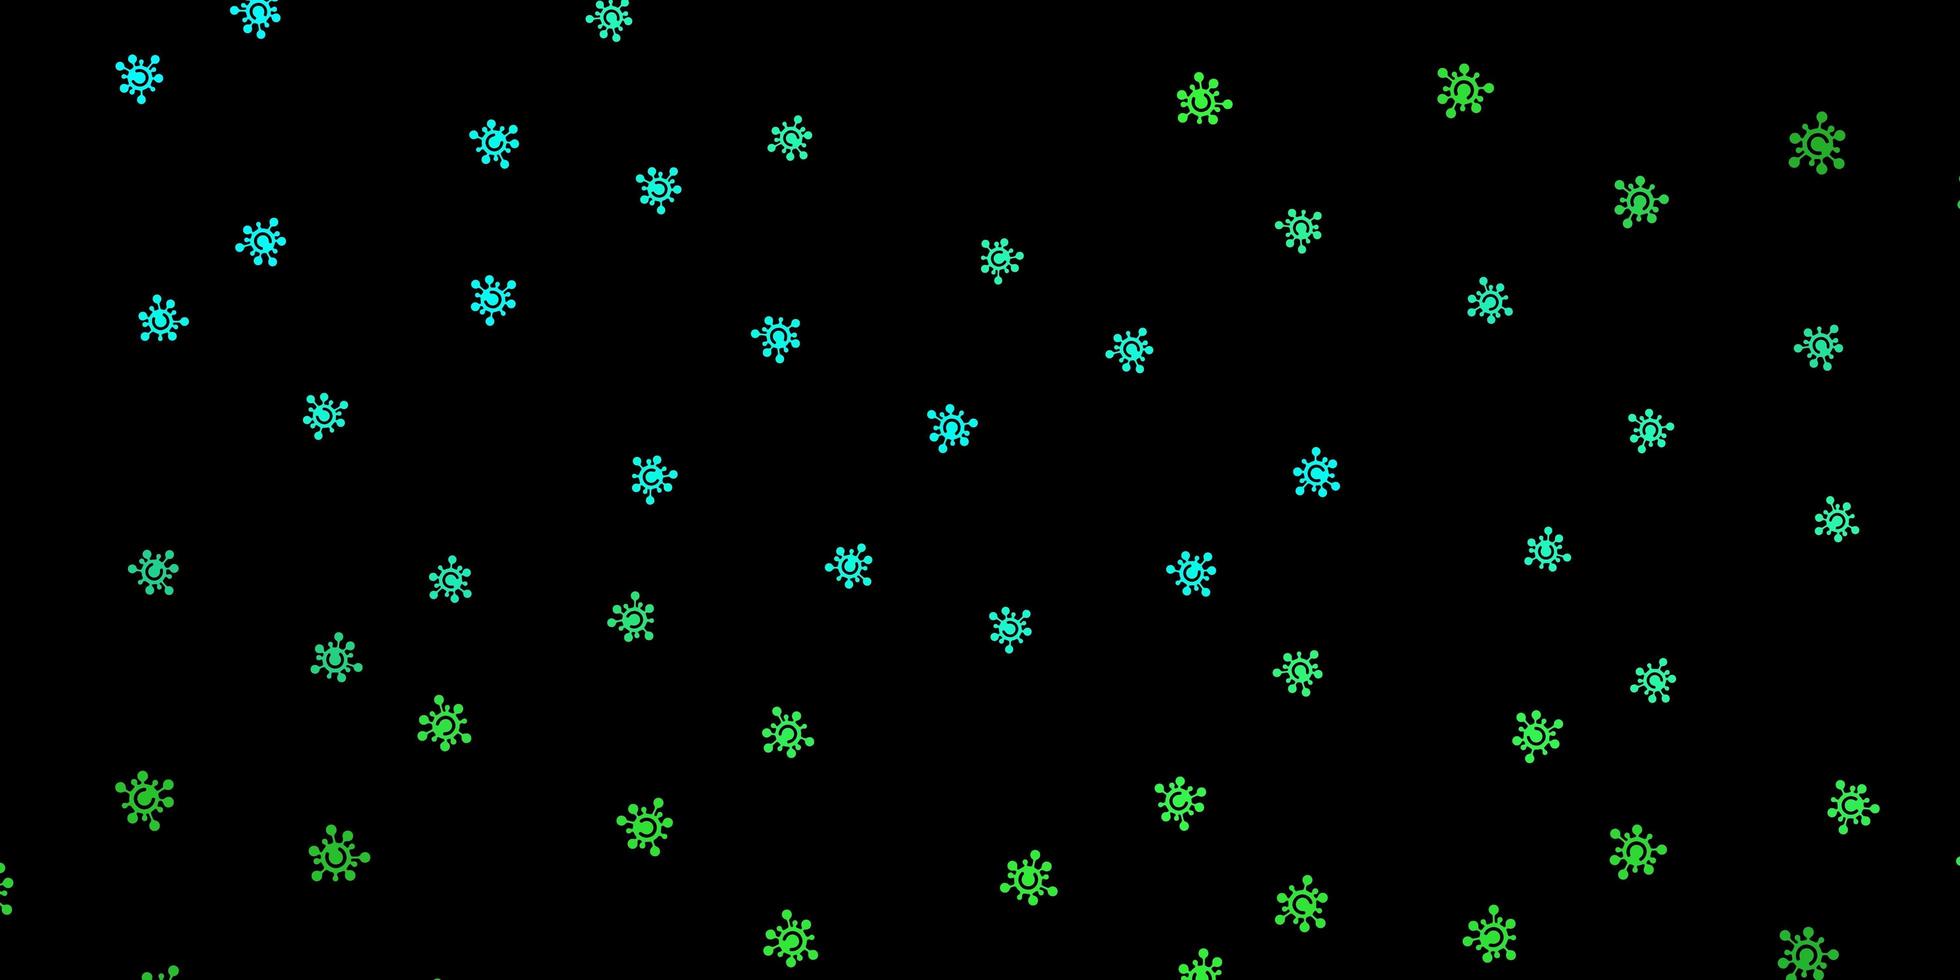 trama vettoriale verde scuro con simboli di malattia.